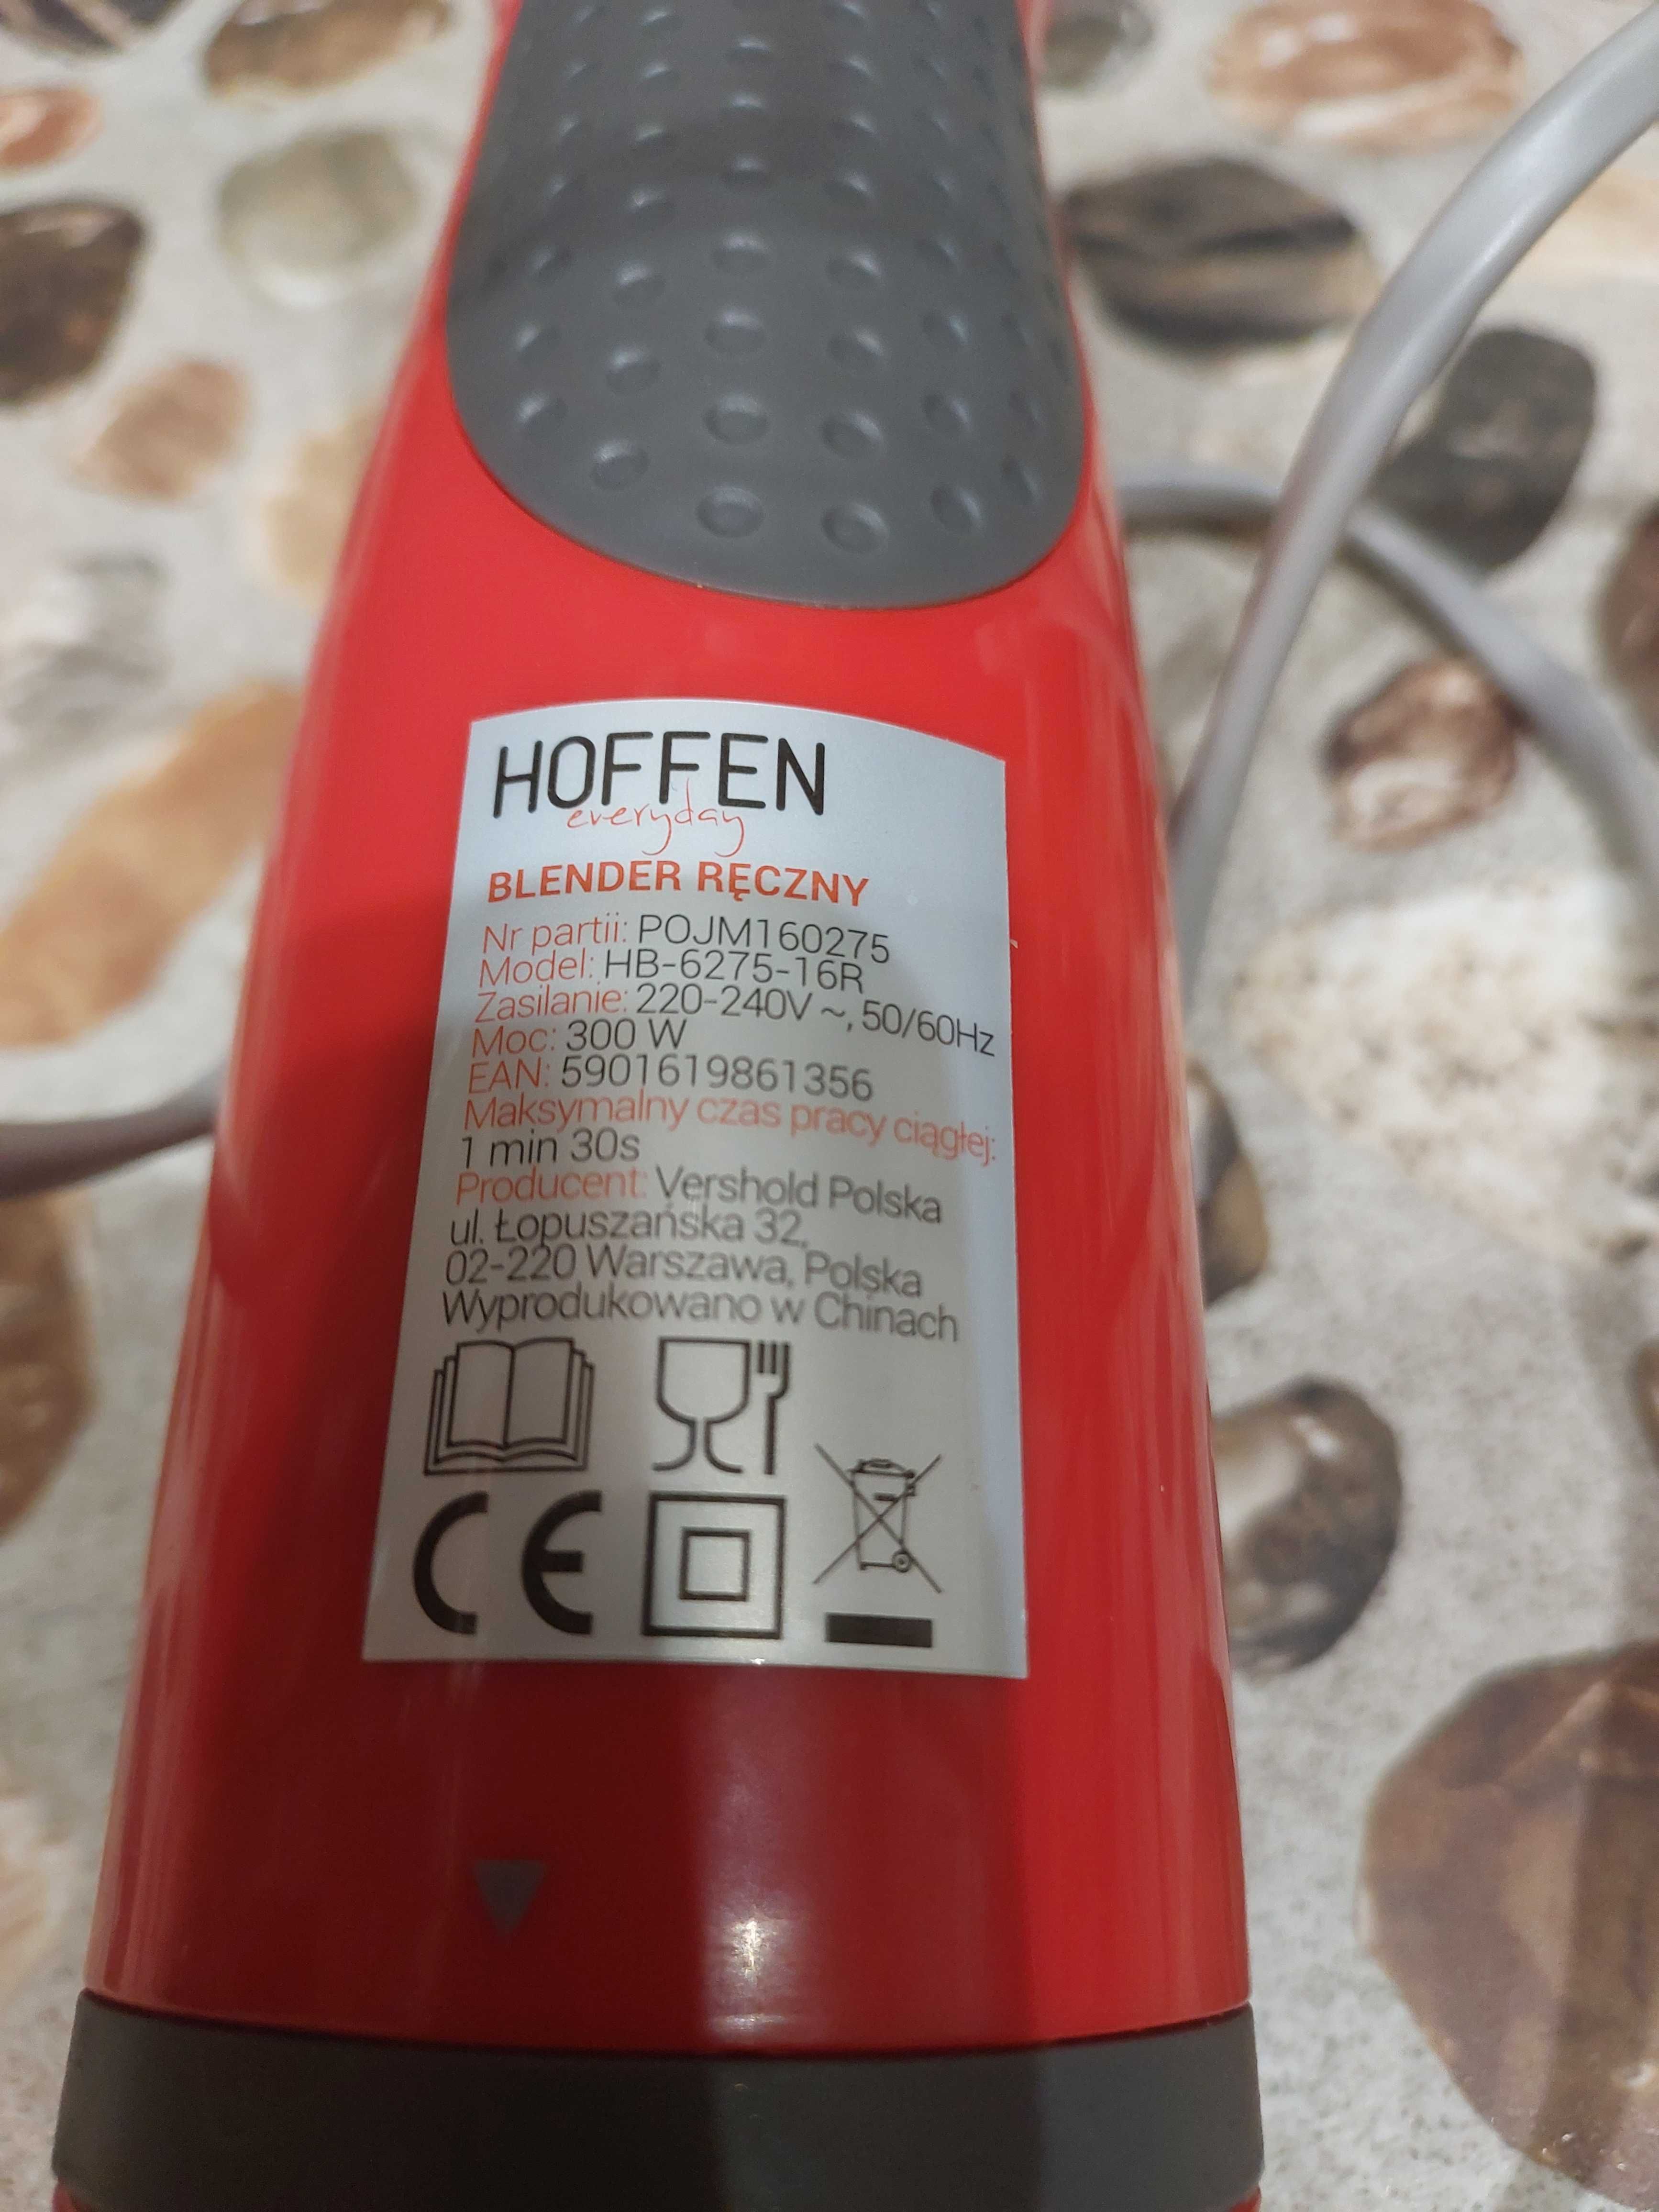 Blender ręczny Hoffen 300W, 100% sprawny